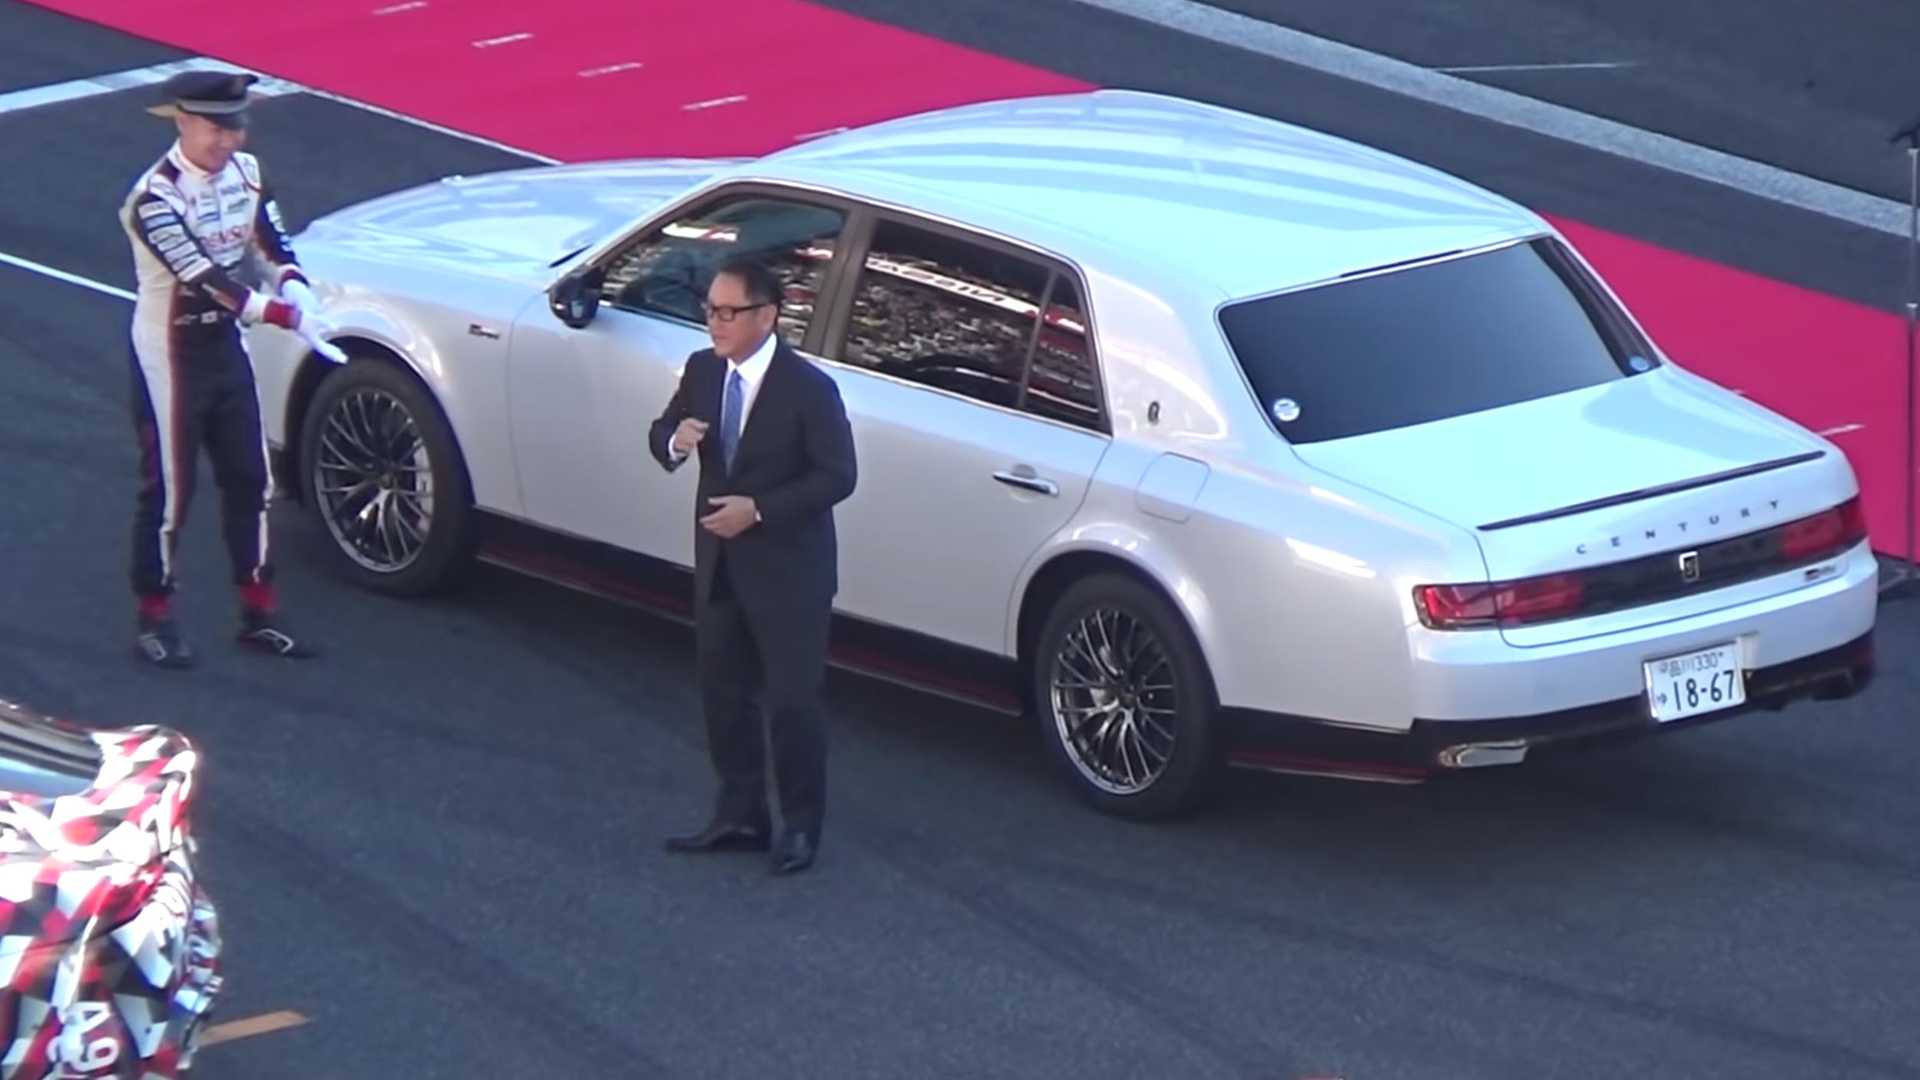 “بالفيديو” رئيس تويوتا يتباهى بسيارته الفاخرة على المضمار